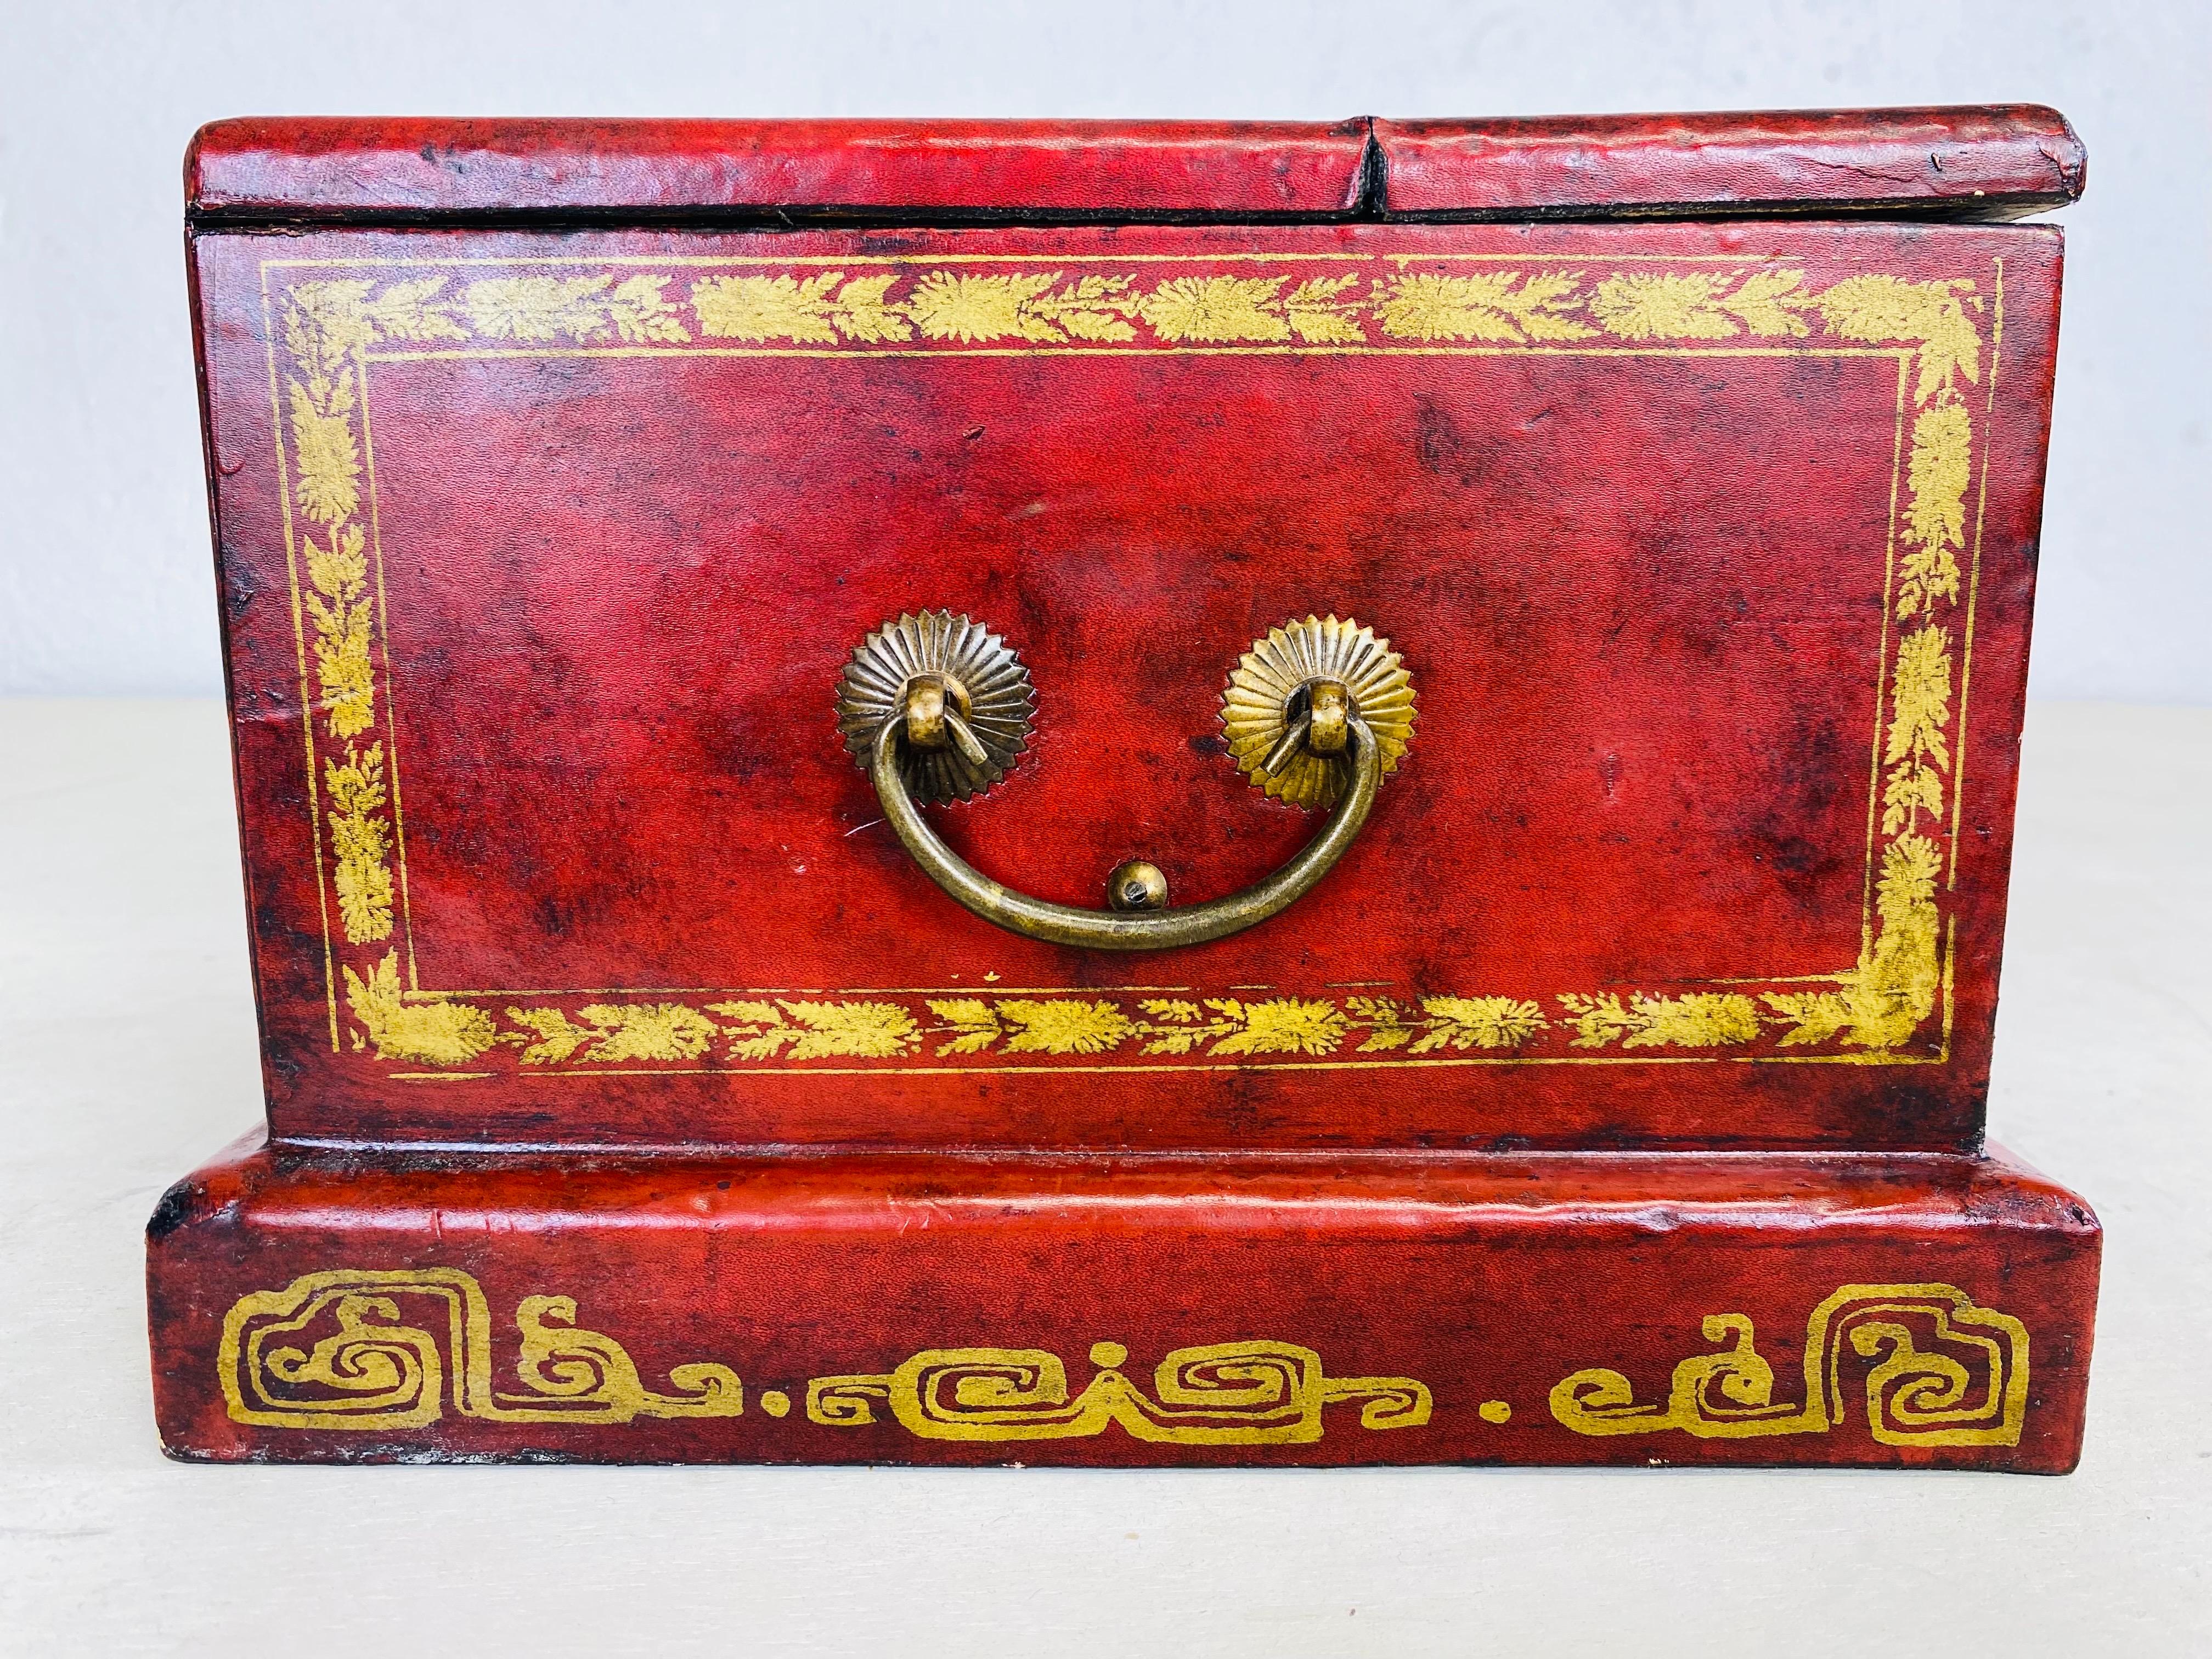 Dies ist ein Vintage handbemalt Leder gekleidet Kommode Box. Diese Kommodenbox wurde in Kanton-China handgefertigt. Diese Box hat zwei kleine Schubladen an der Vorderseite und einen Deckel, der sich öffnen lässt und einen Ankleidespiegel